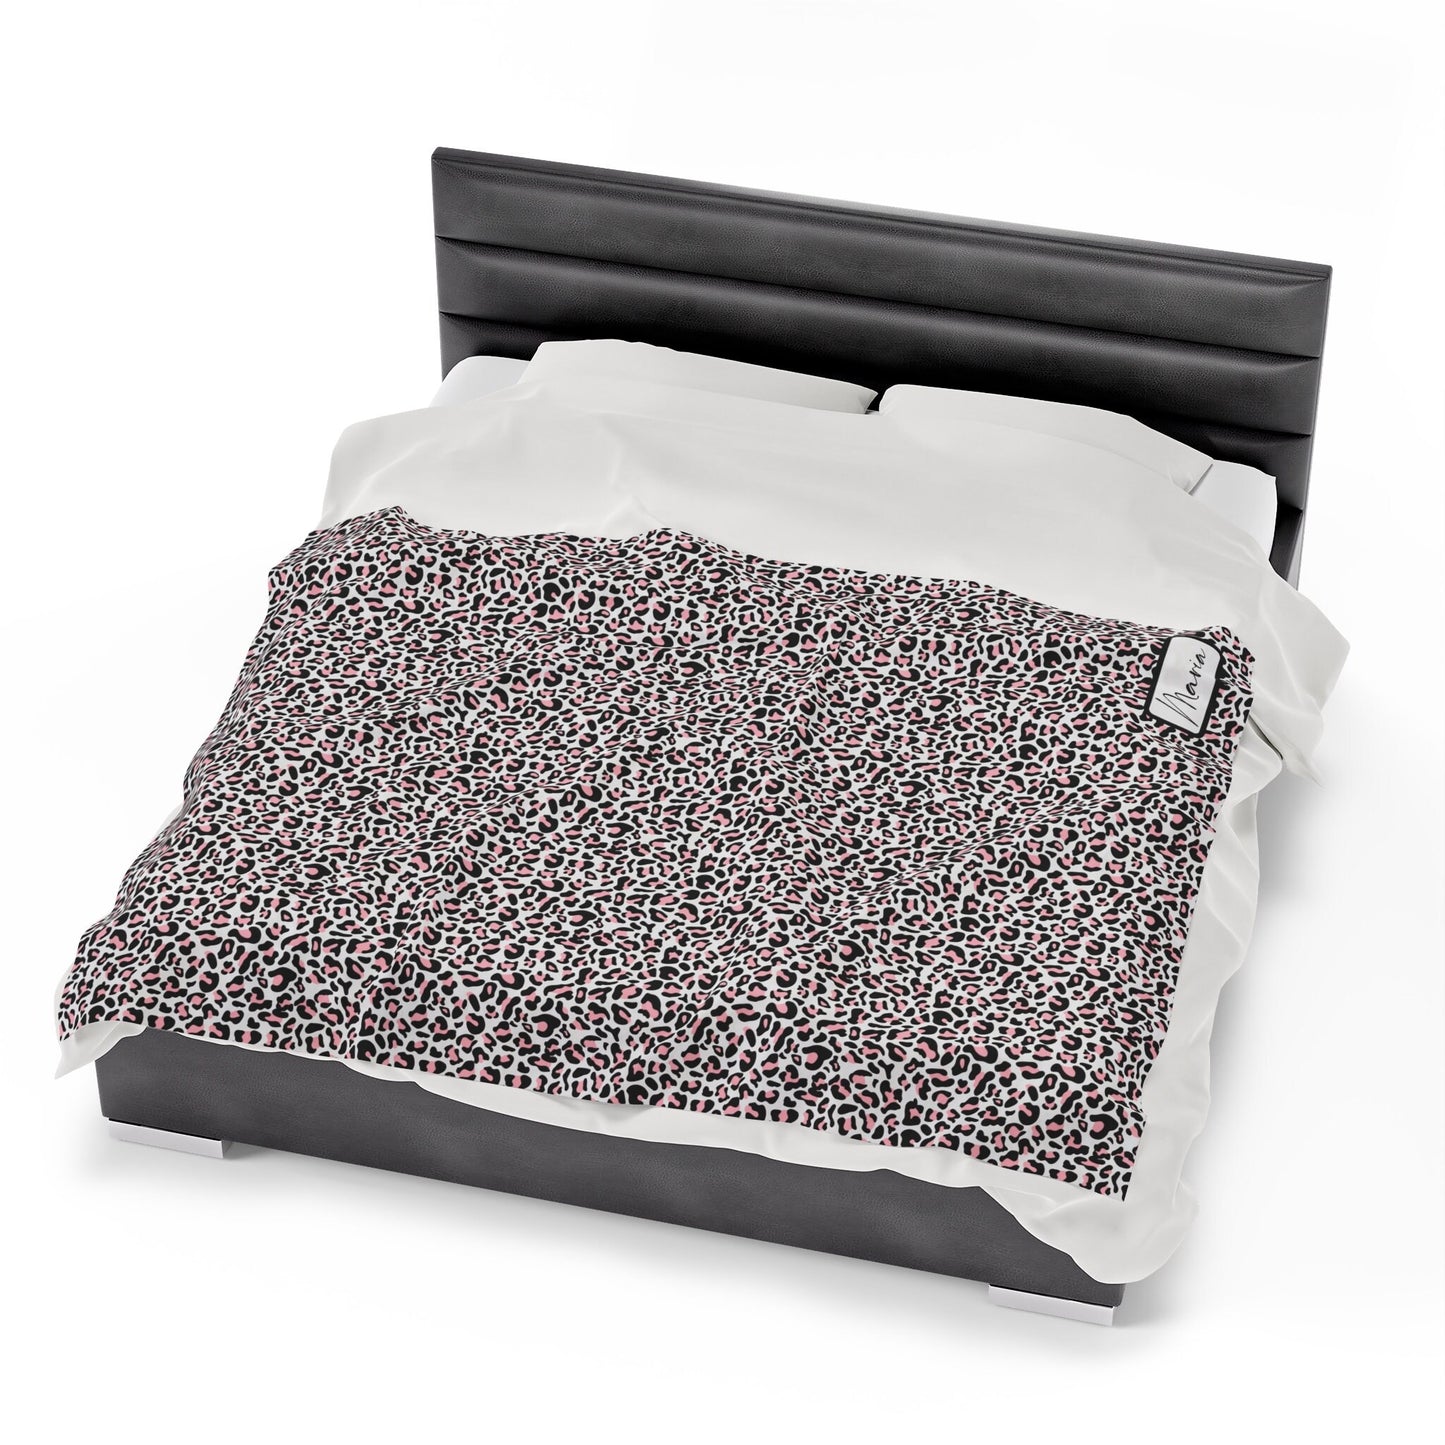 Personalized Leopard Animal Print Blanket, Plush Velveteen Throw Blanket Mom Gift, Custom Name Blanket, Cozy Luxury Blanket Birthday Gift